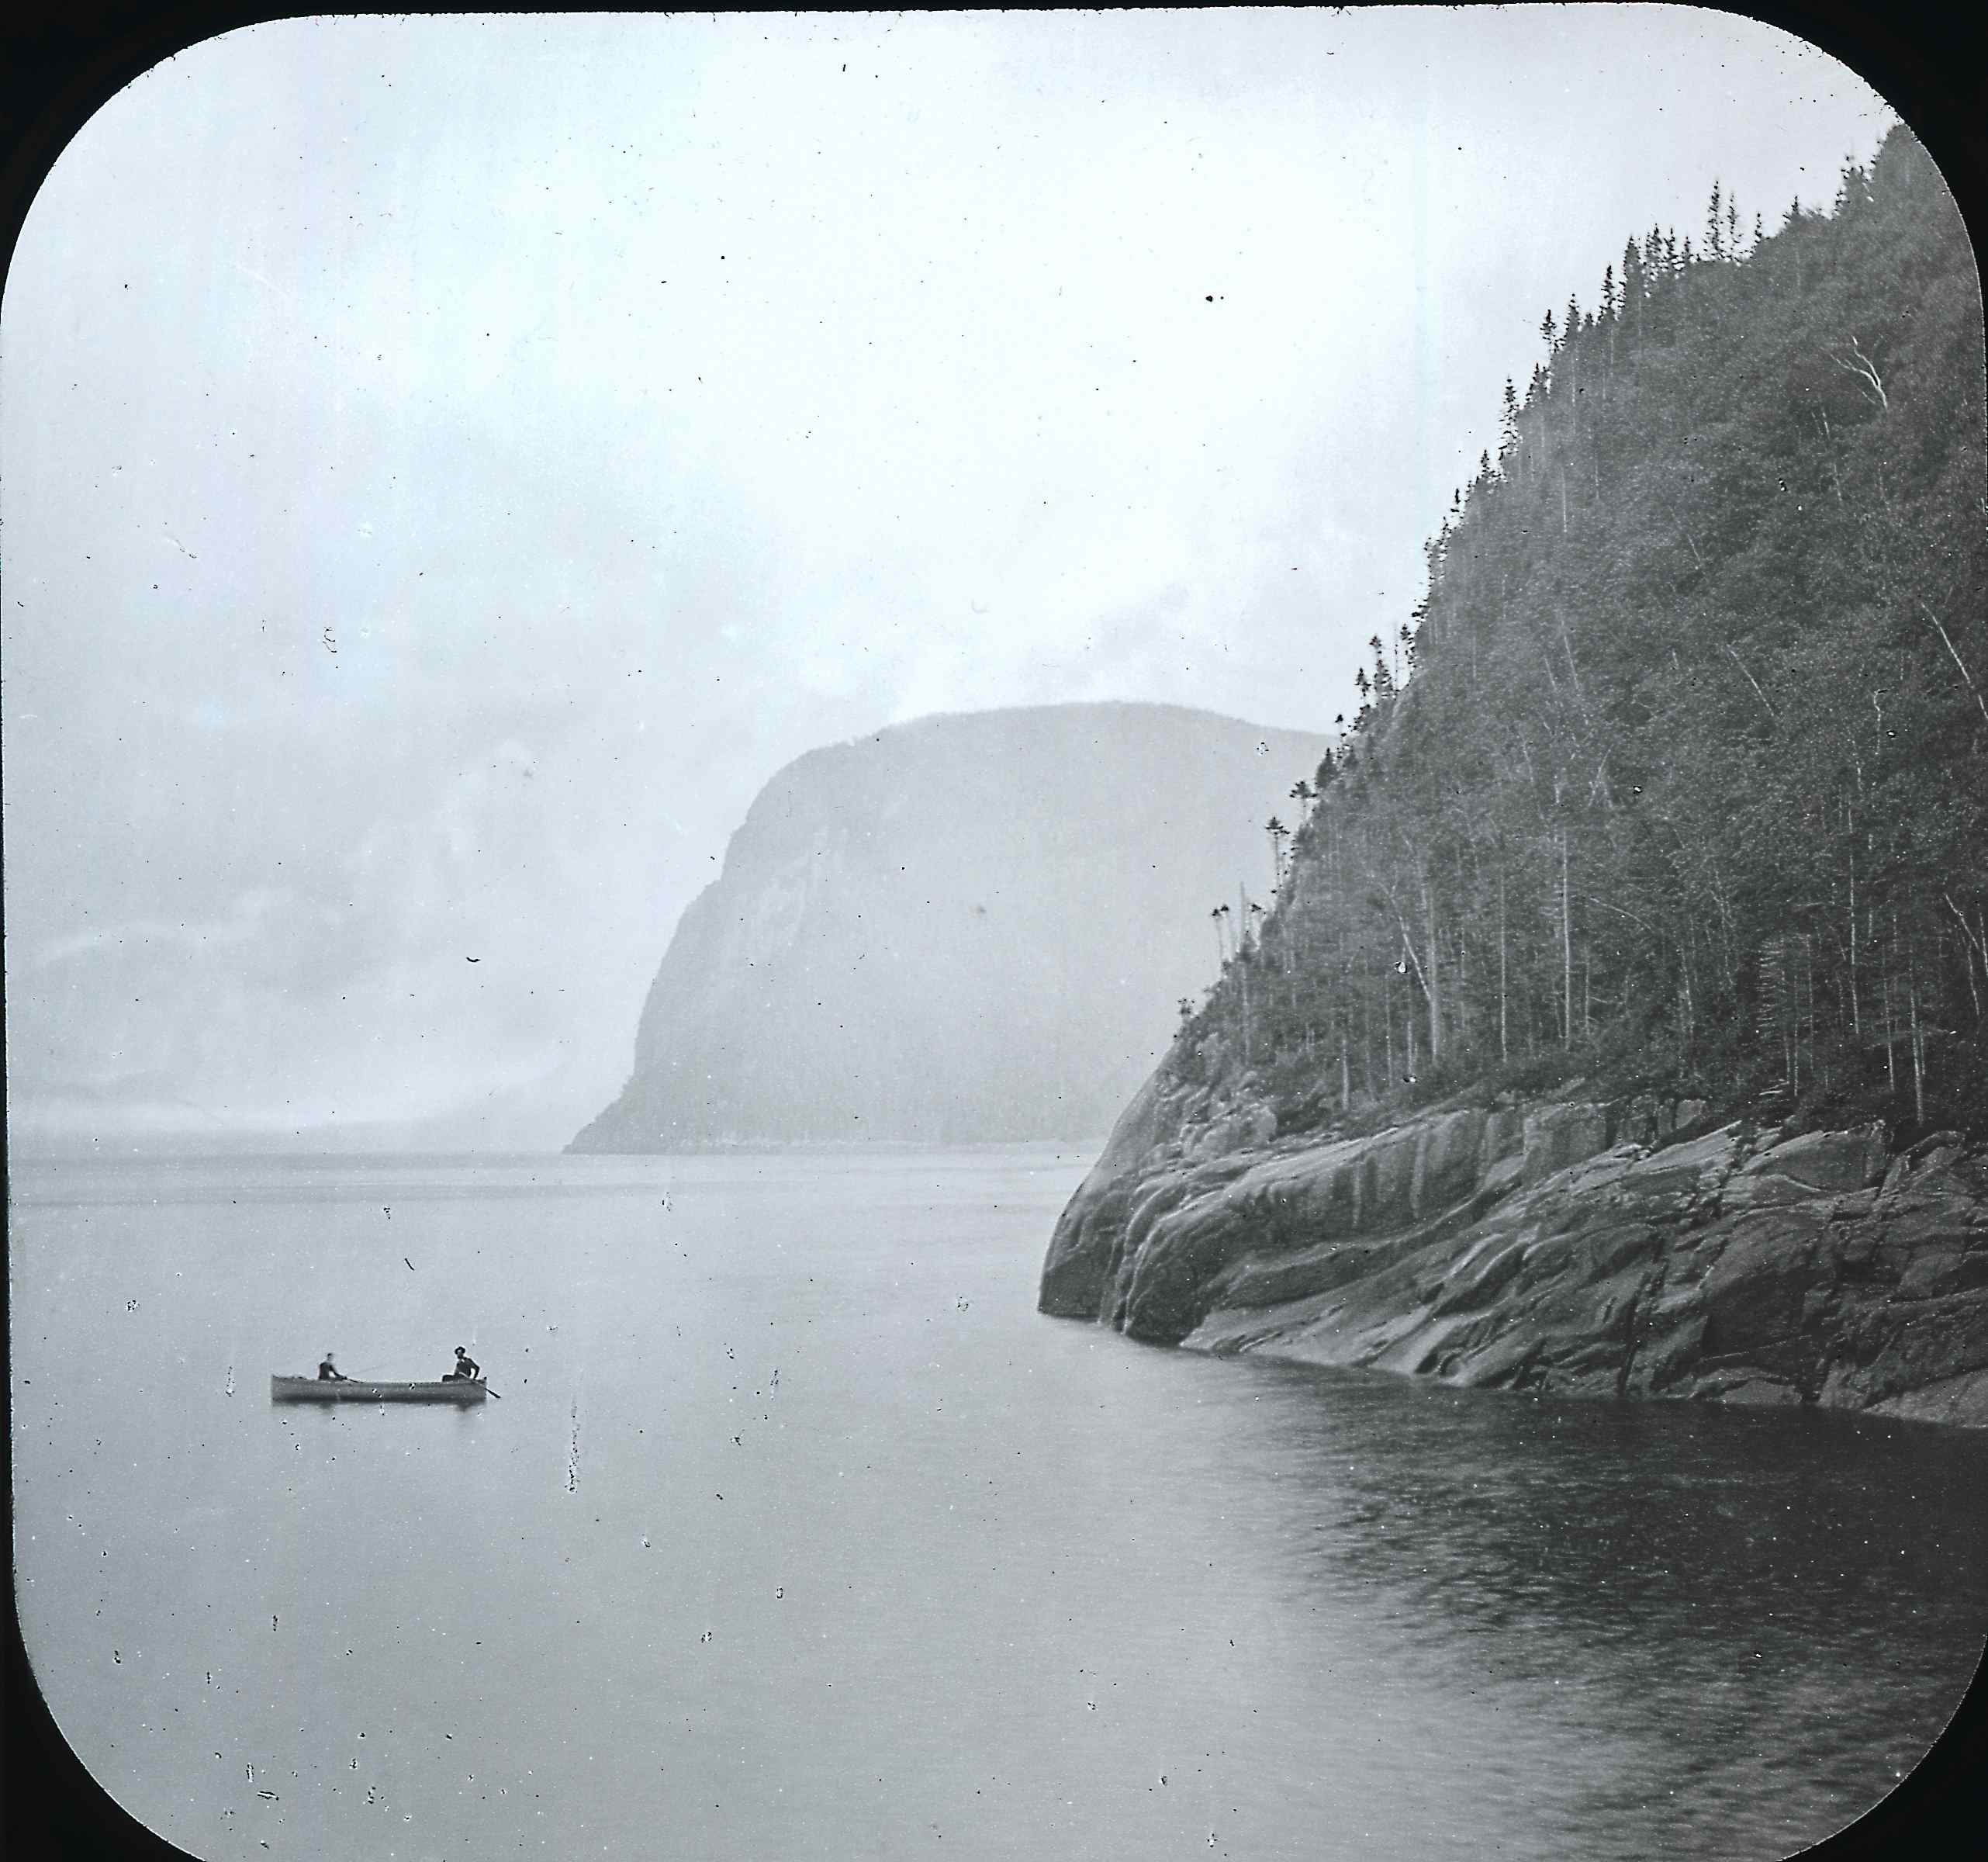 Deux hommes pêchent en canot, au pied d’une falaise qui descend dans une rivière très large.